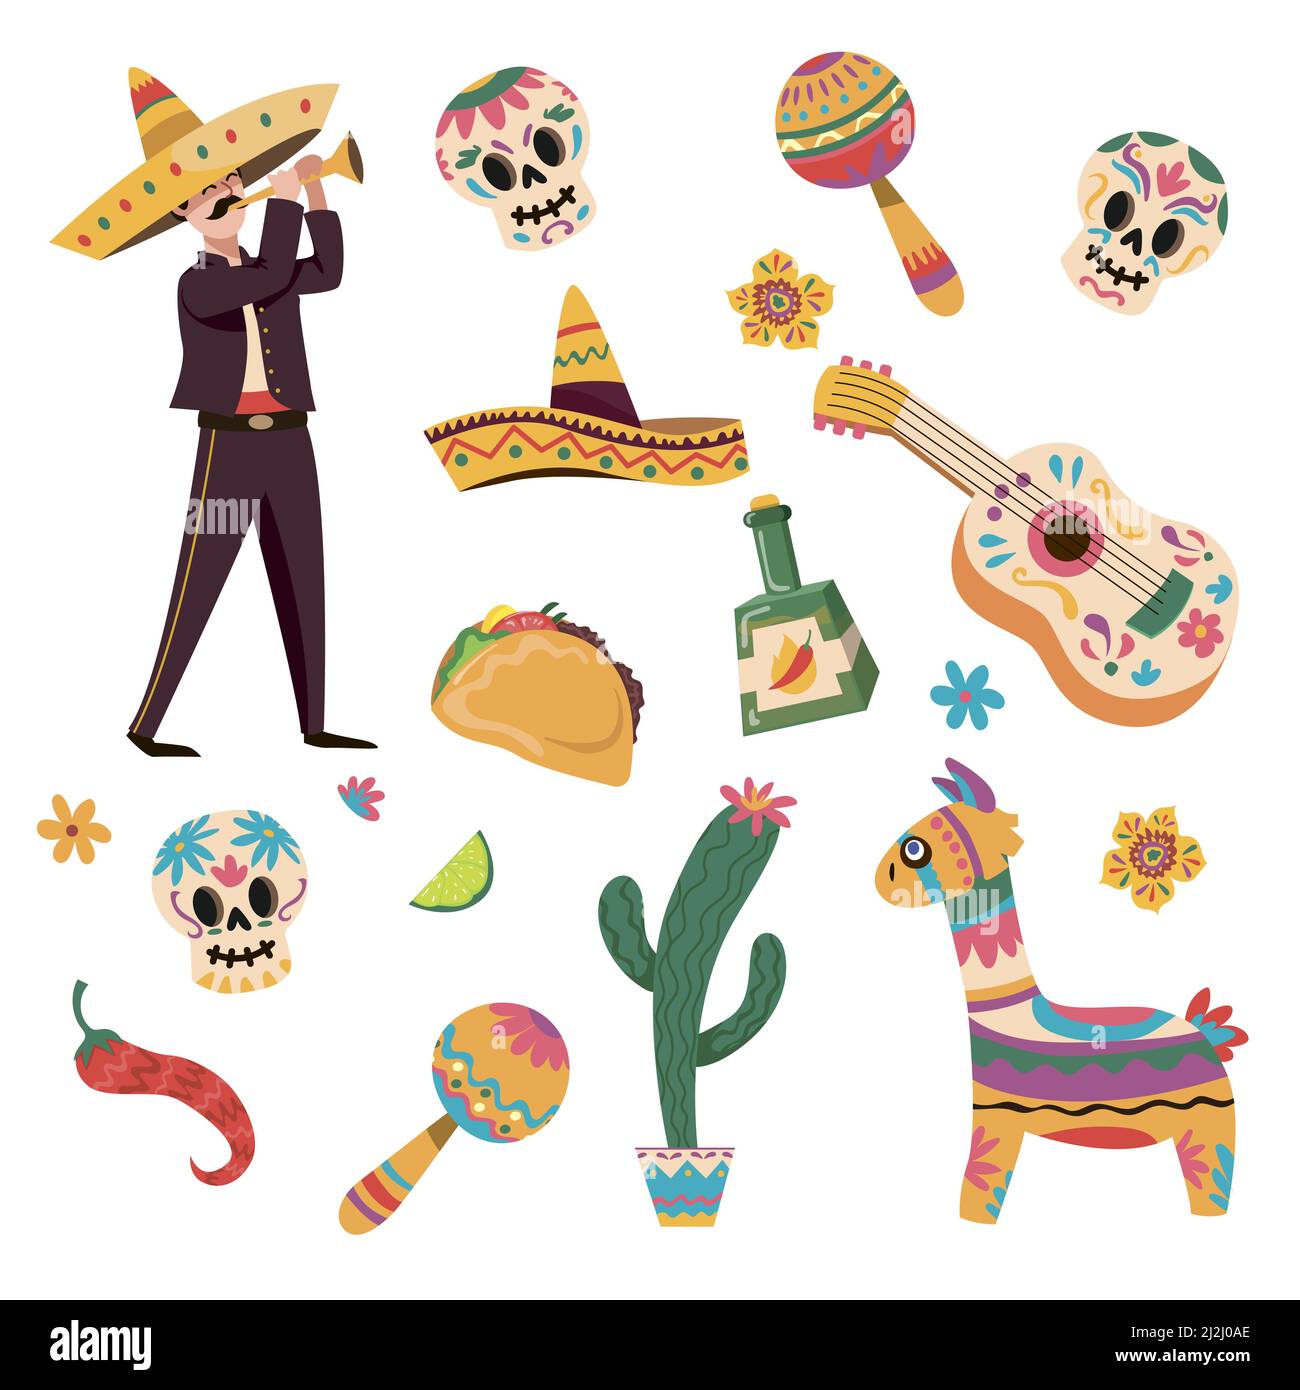 Ensemble d'illustrations vectorielles de dessins animés de symboles mexicains traditionnels pour divers dessins.Taco, sombrero, cactus, guitare, maracas,lama, poivre, squelette st Illustration de Vecteur